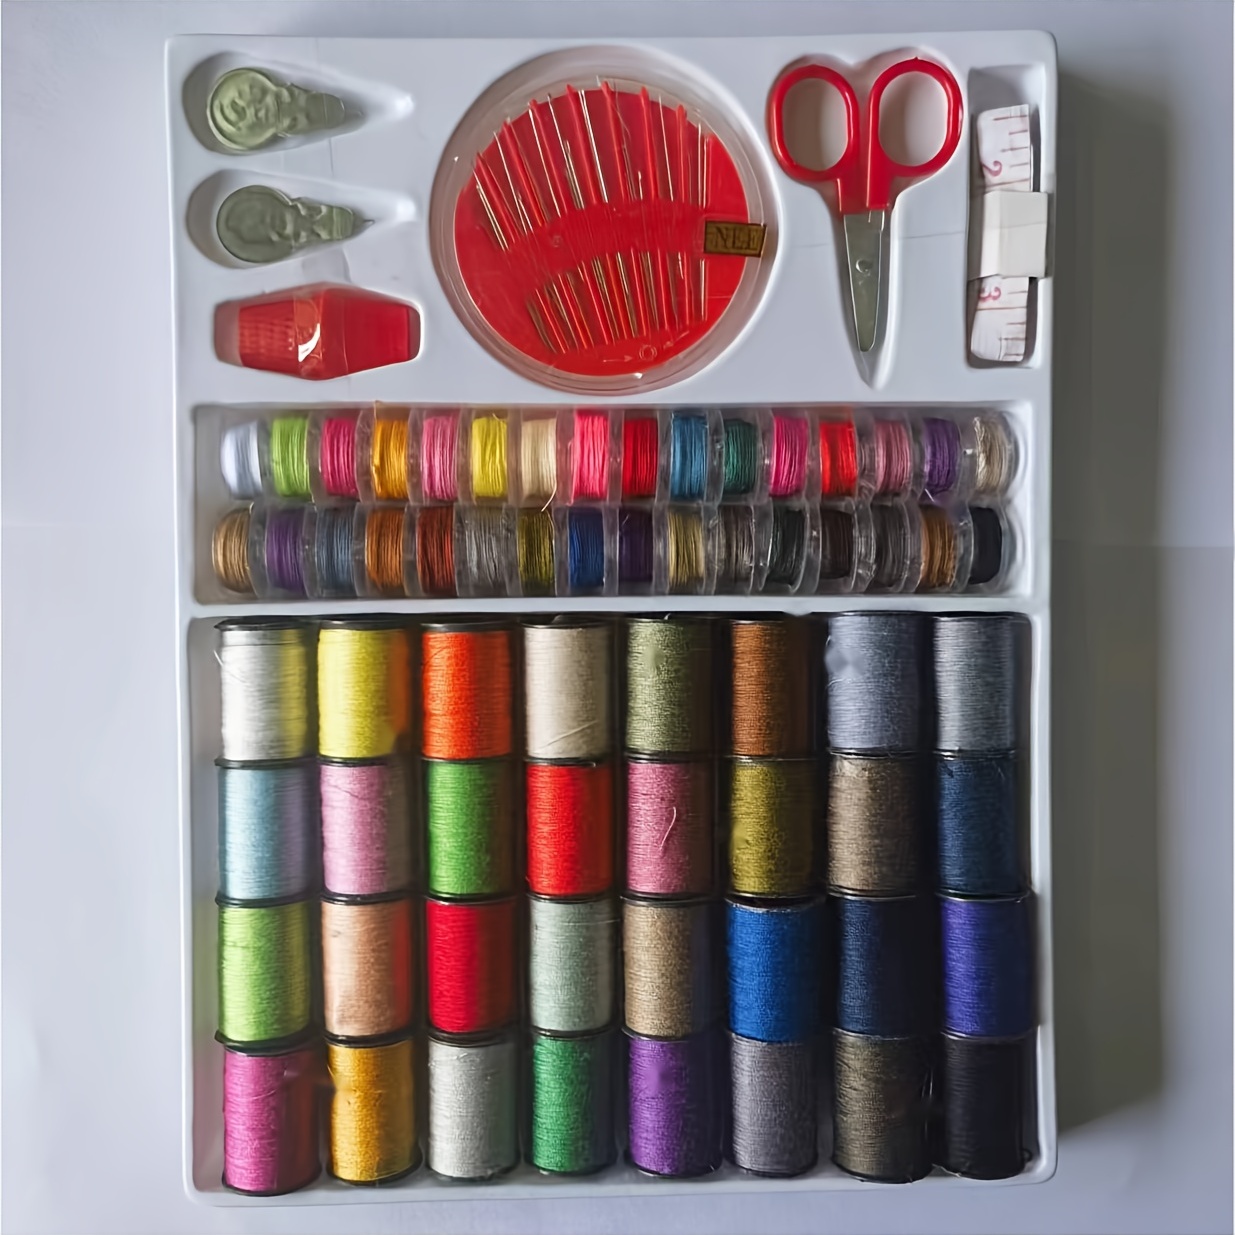 Mini Travel Sew Kit Mini Household Sewing Box Set Portable - Temu